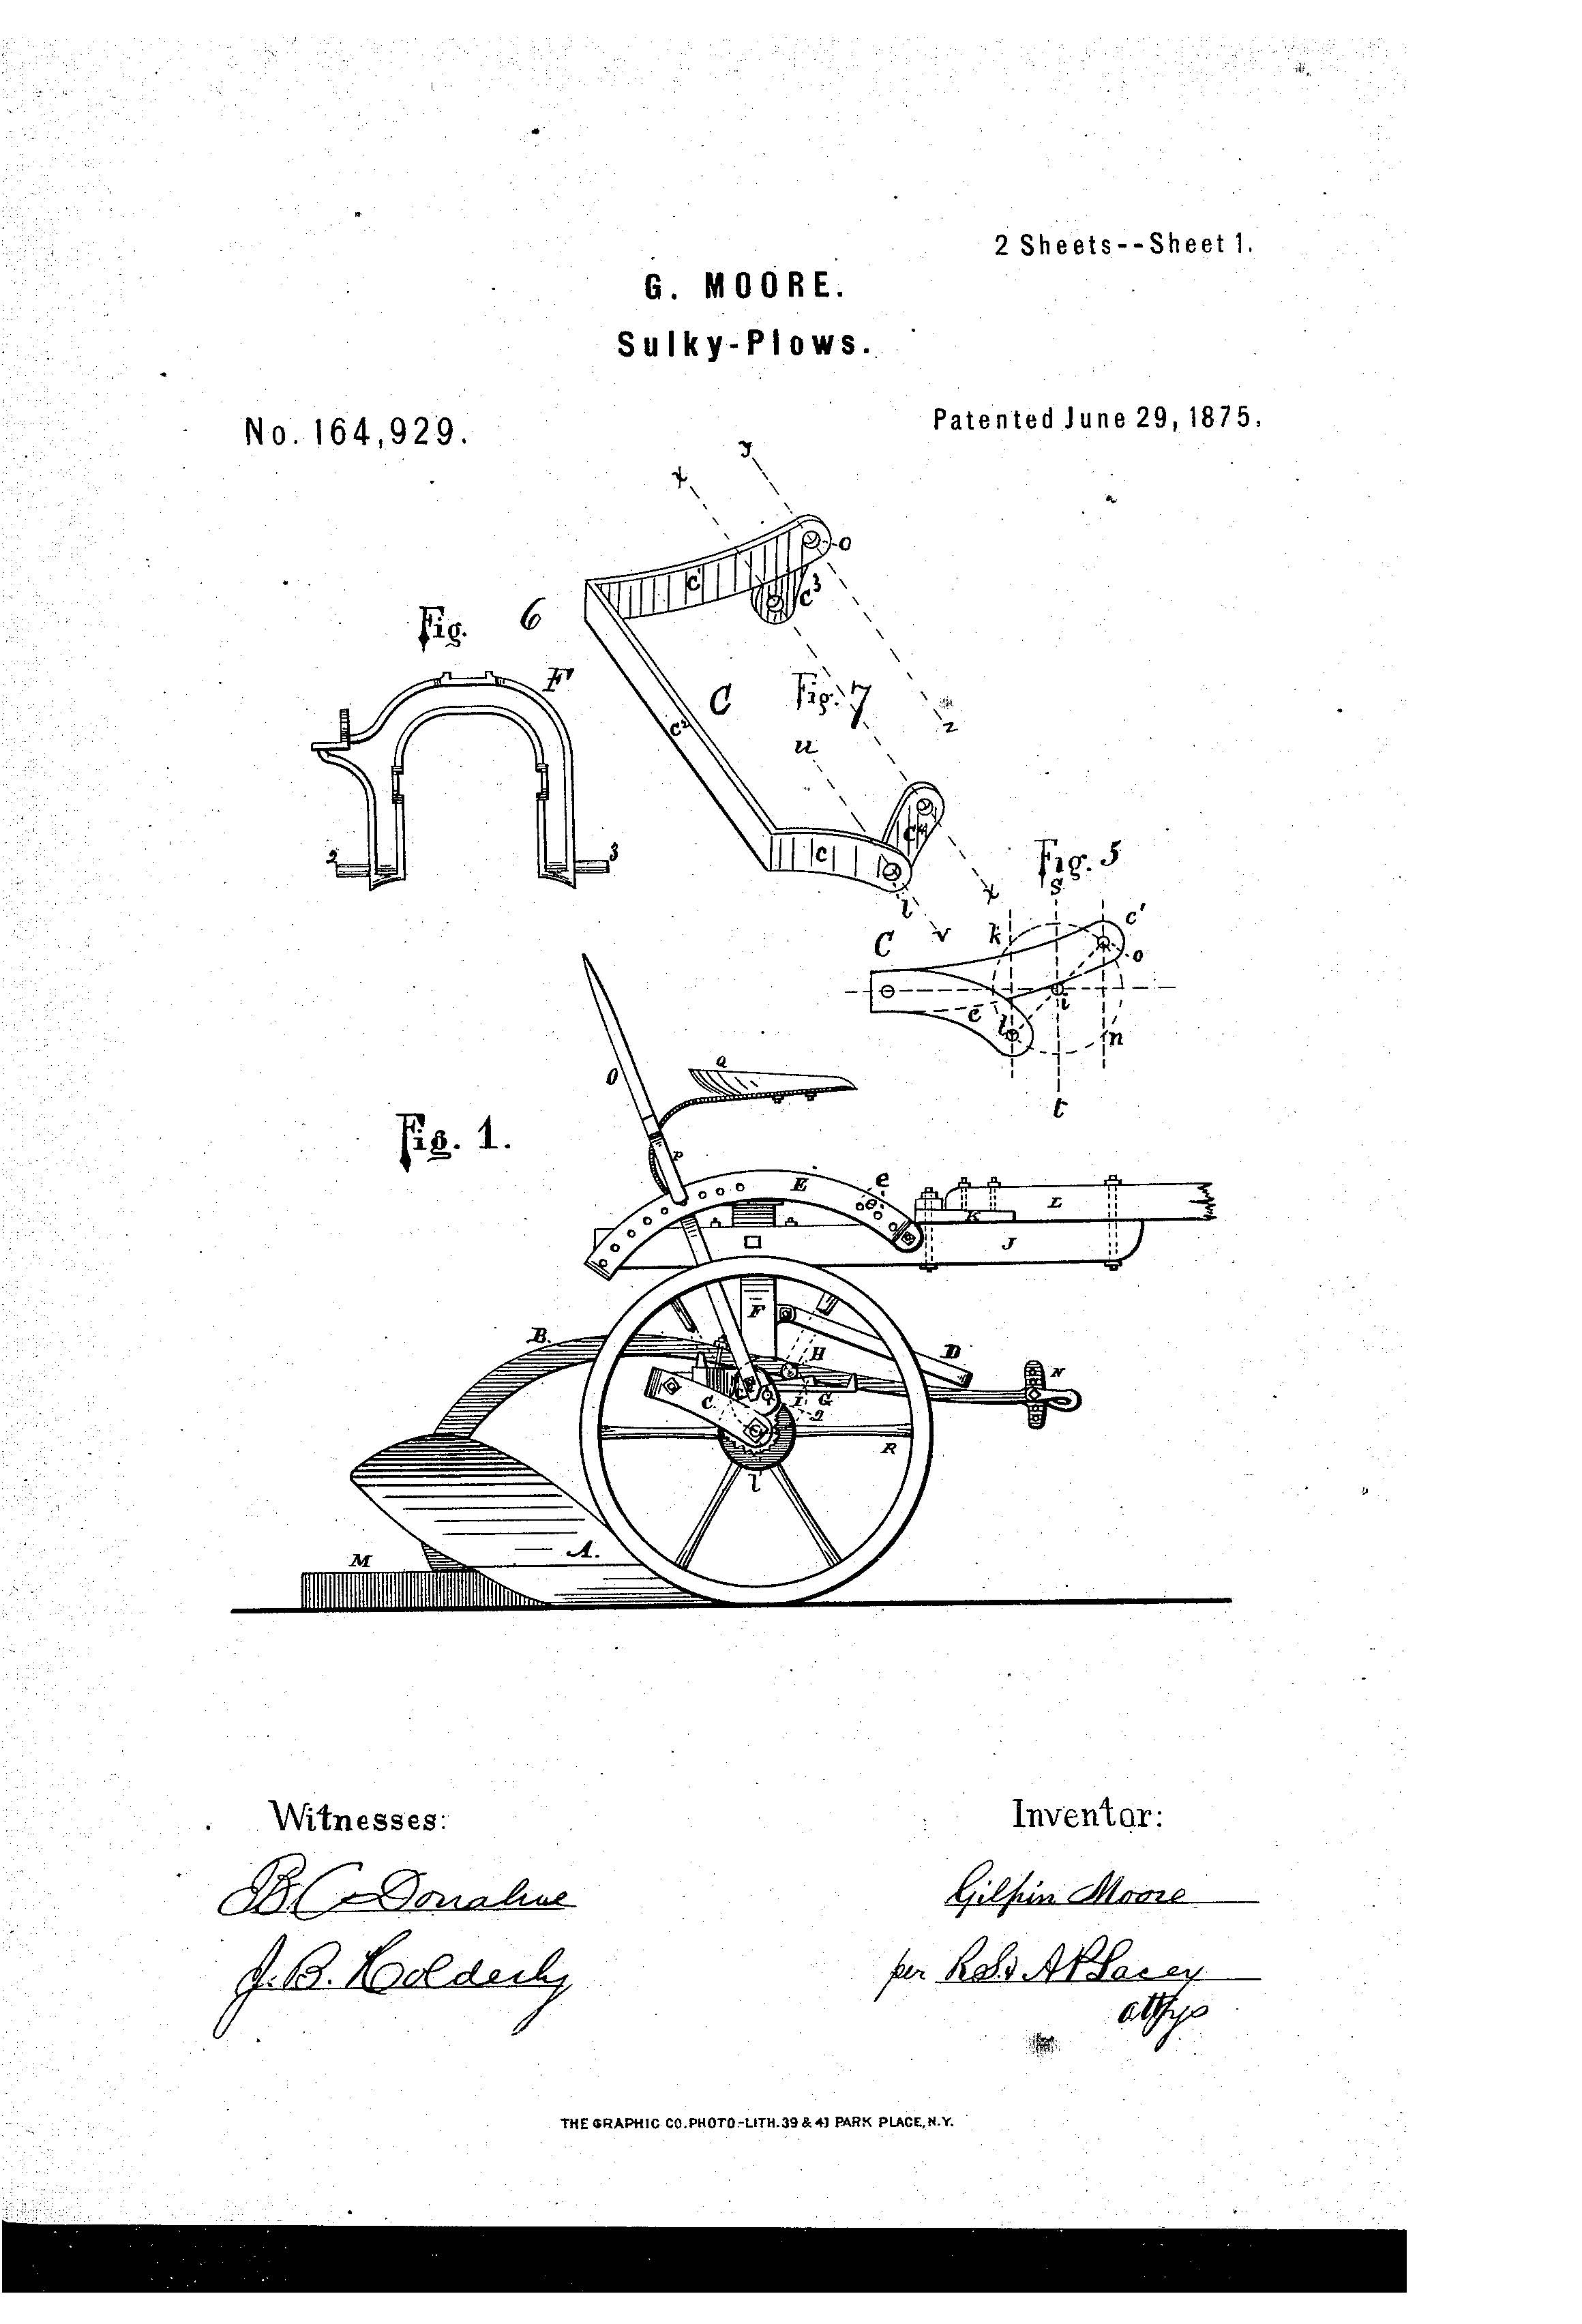 John Deere Patent